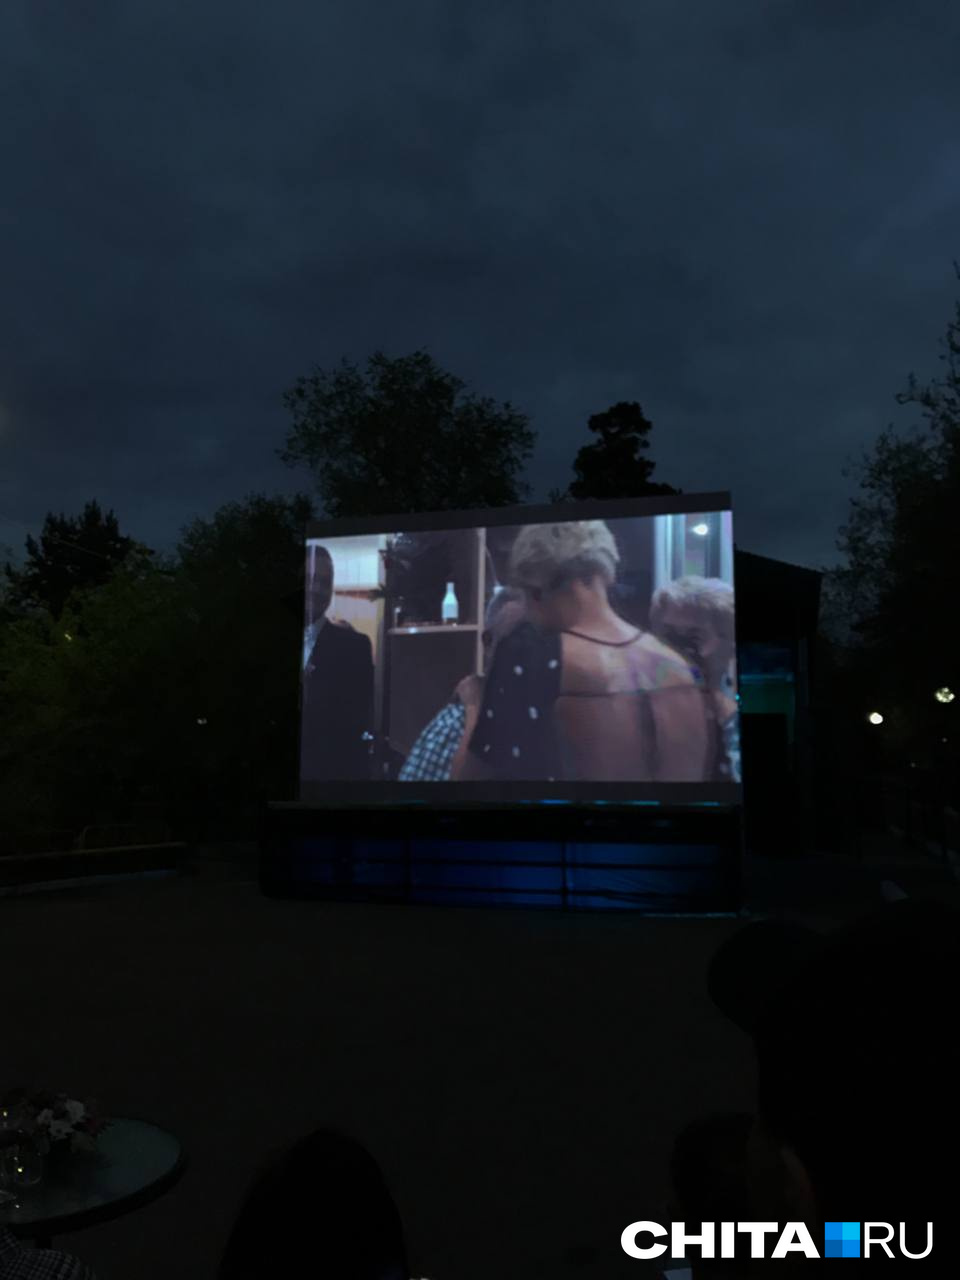 Смотреть кино на улице, когда лето уже разыгрывается и ночами теплеет — это незабываемый и приятный зрительский опыт